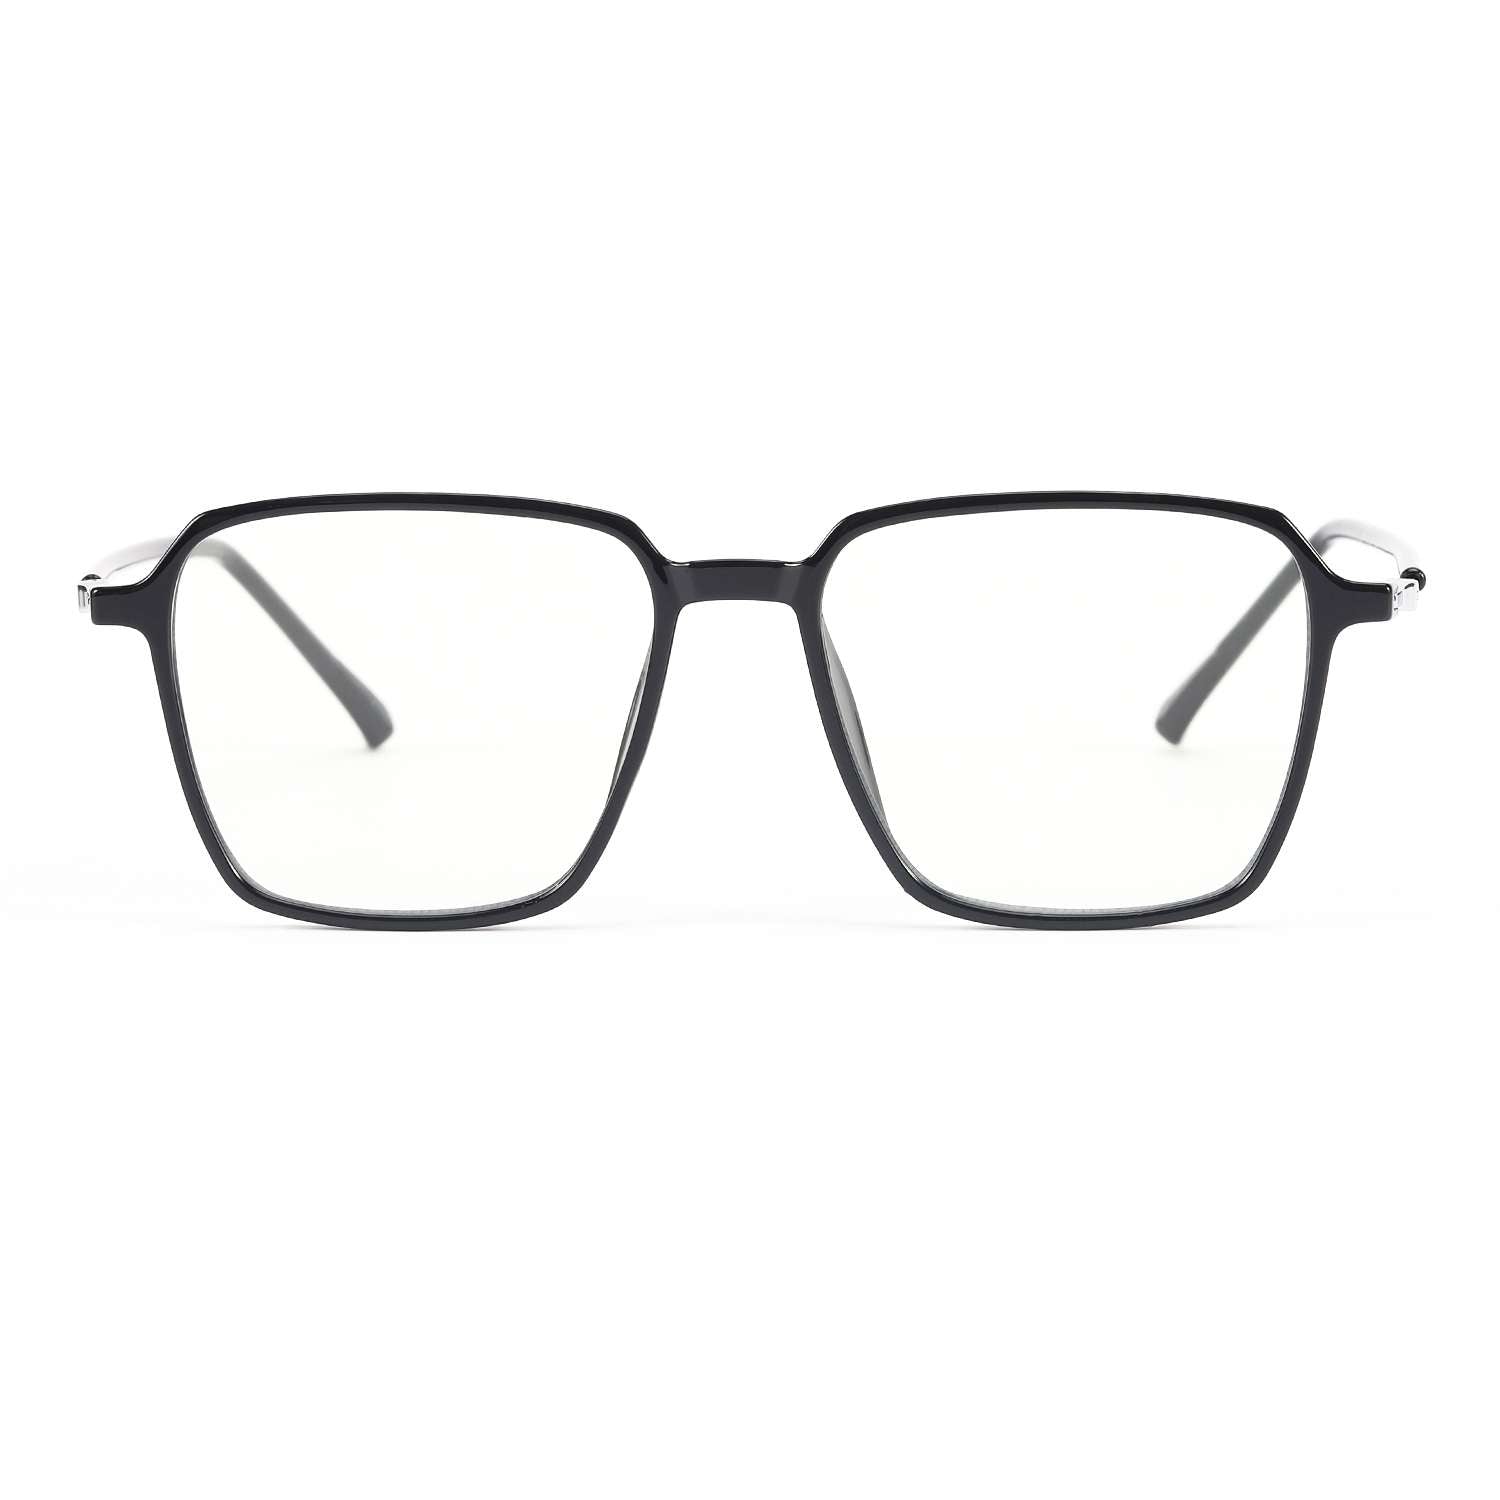 Letto - Blueblocker Brille  Brille kaufen, Blaues licht, Brille